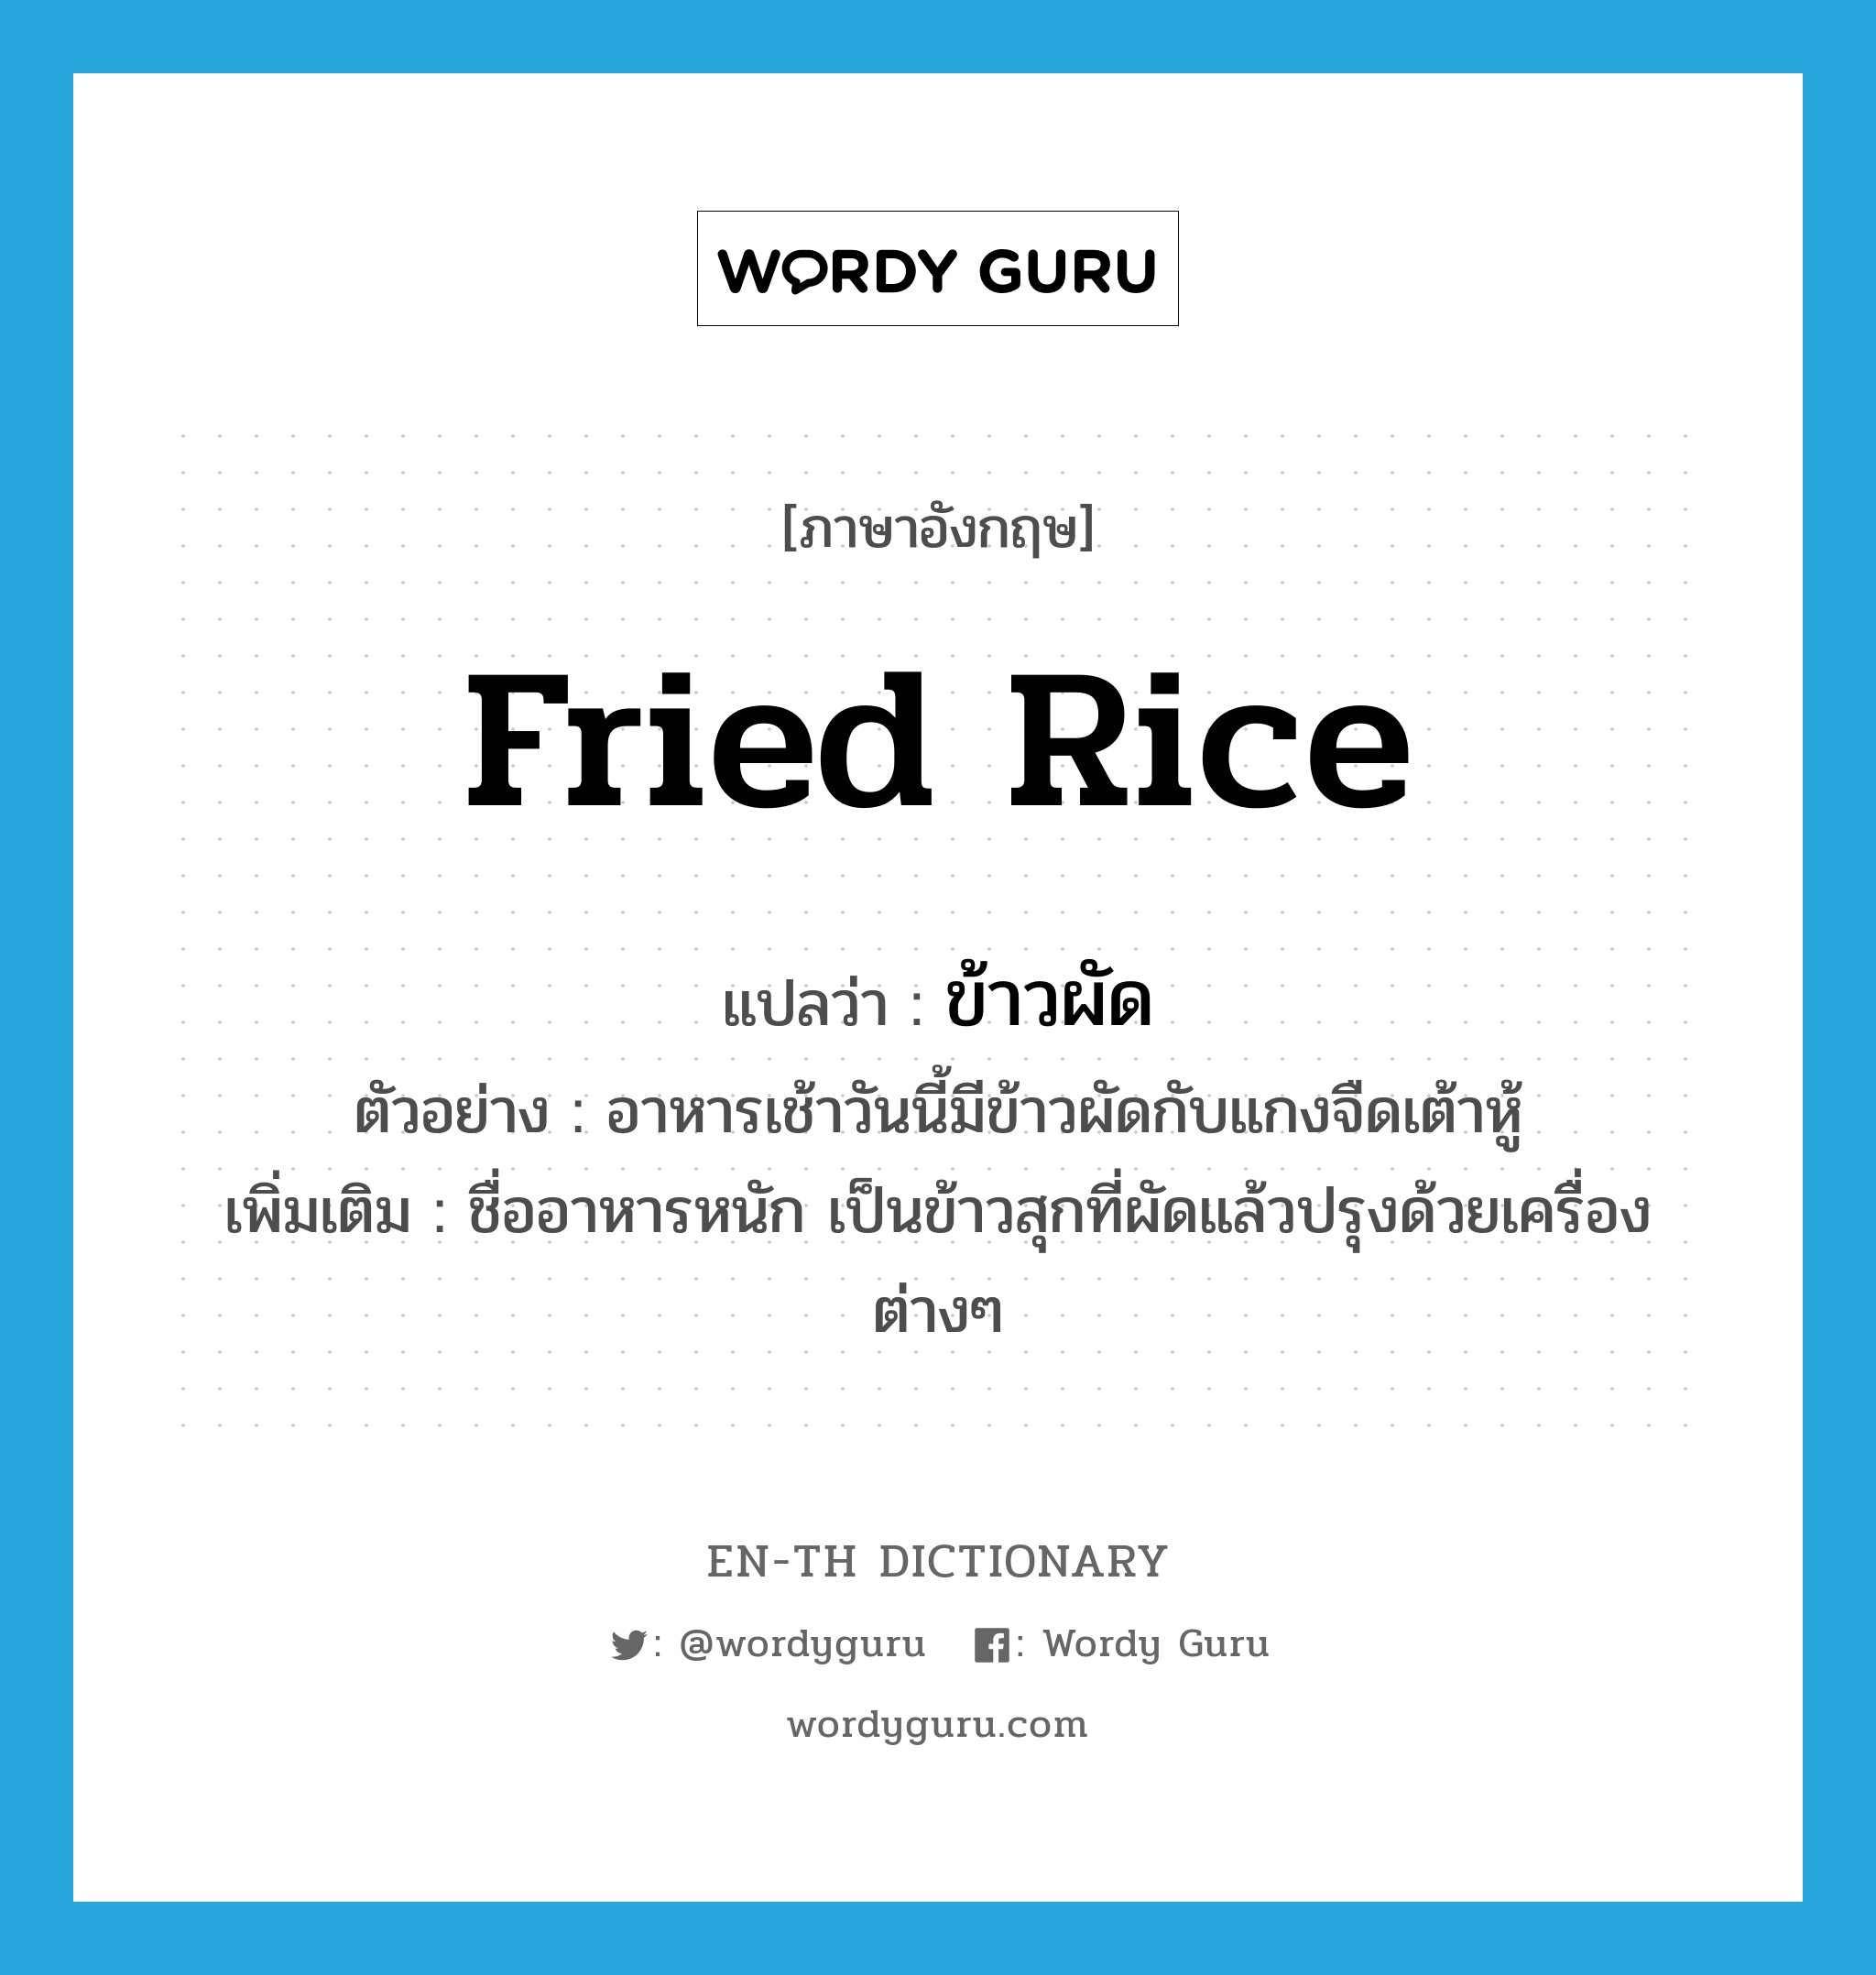 ข้าวผัด ภาษาอังกฤษ?, คำศัพท์ภาษาอังกฤษ ข้าวผัด แปลว่า fried rice ประเภท N ตัวอย่าง อาหารเช้าวันนี้มีข้าวผัดกับแกงจืดเต้าหู้ เพิ่มเติม ชื่ออาหารหนัก เป็นข้าวสุกที่ผัดแล้วปรุงด้วยเครื่องต่างๆ หมวด N